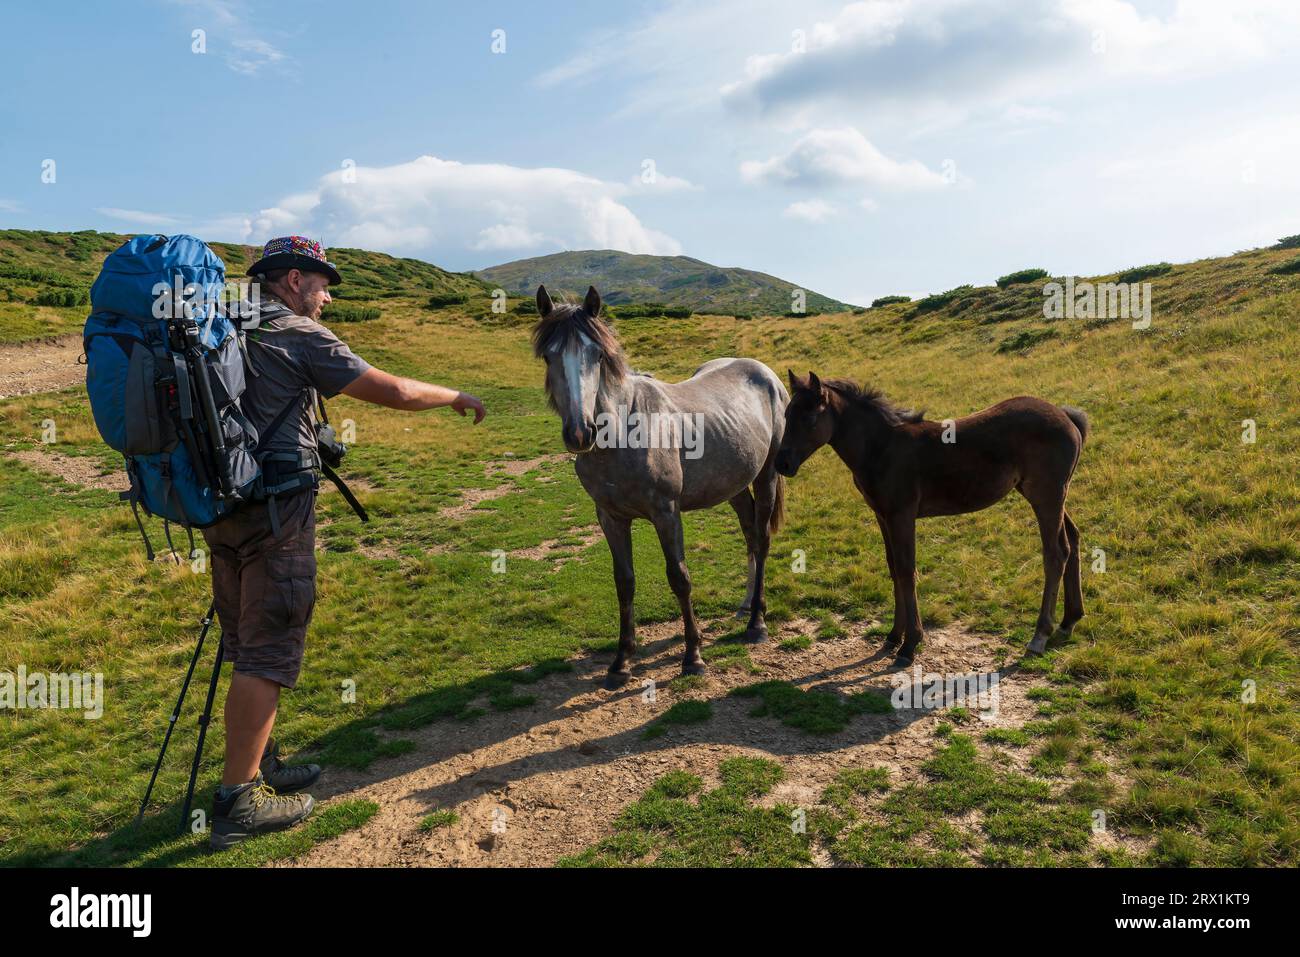 Randonneur avec sac à dos nourrit les chevaux sauvages sur le trek de montagne. Des vacances en plein air incroyables Banque D'Images